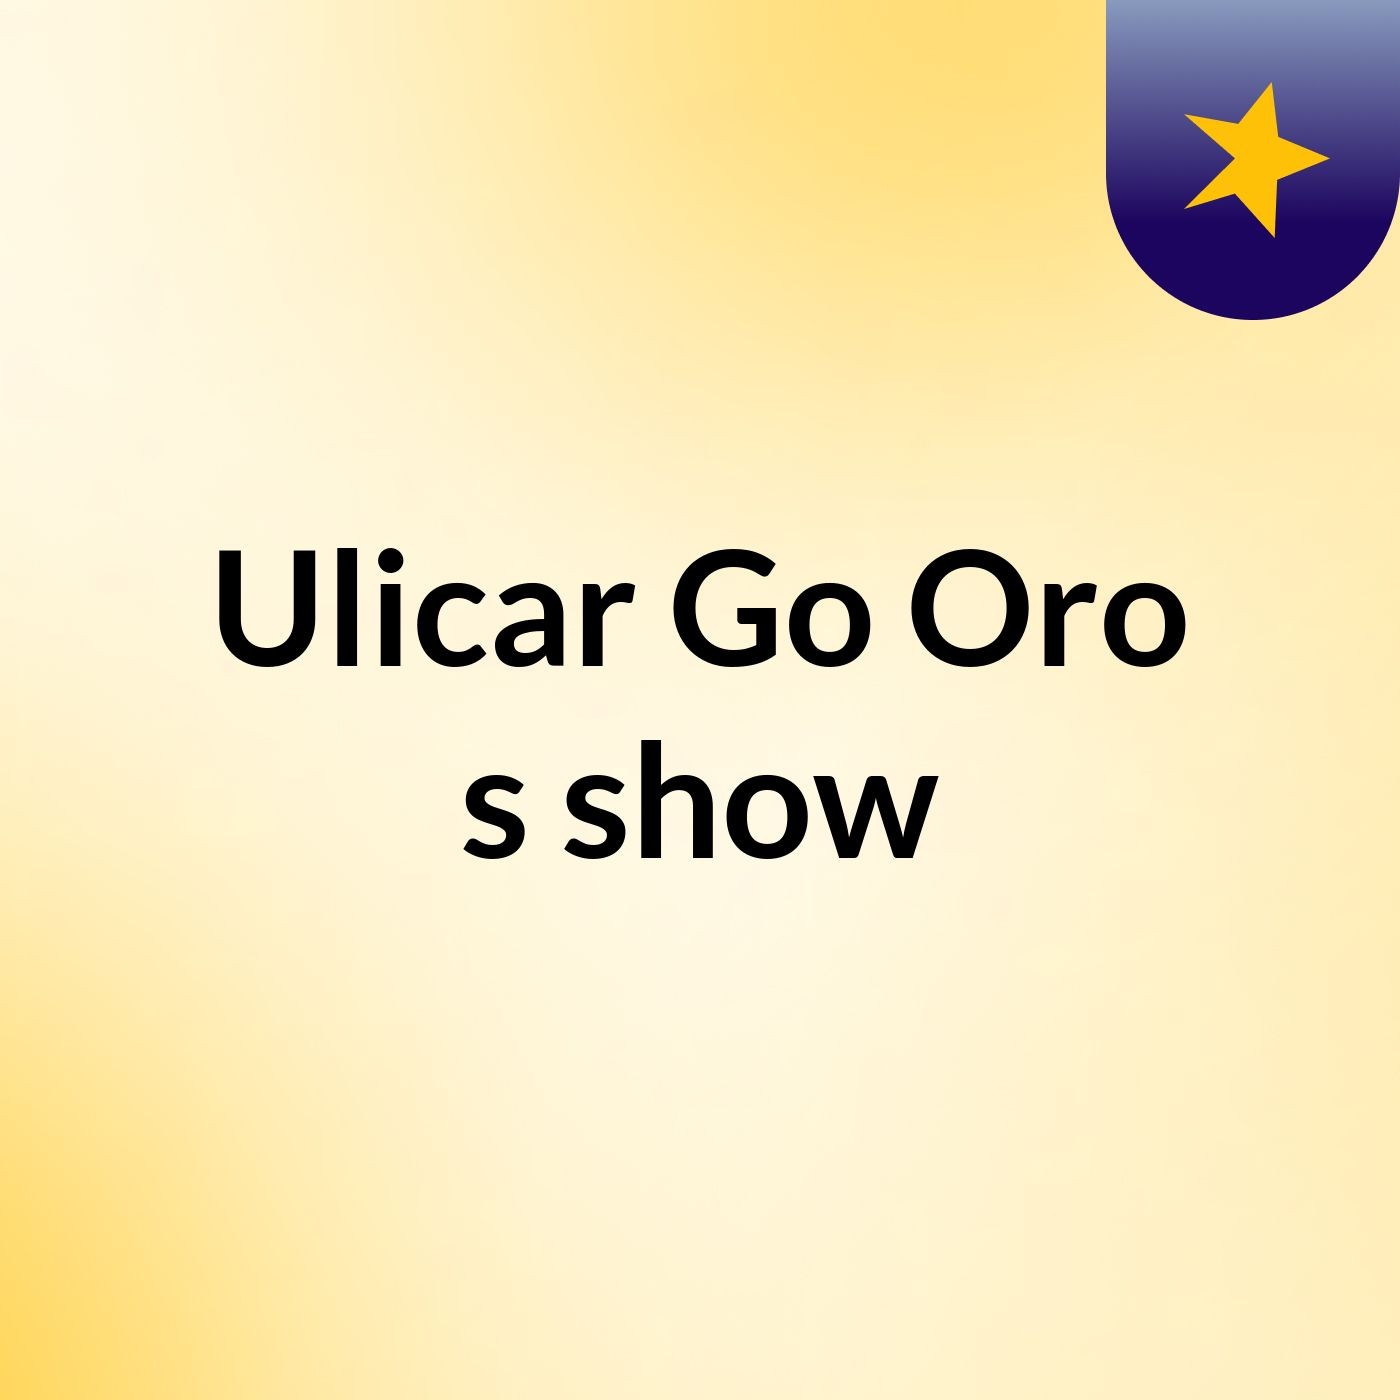 Ulicar Go Oro's show